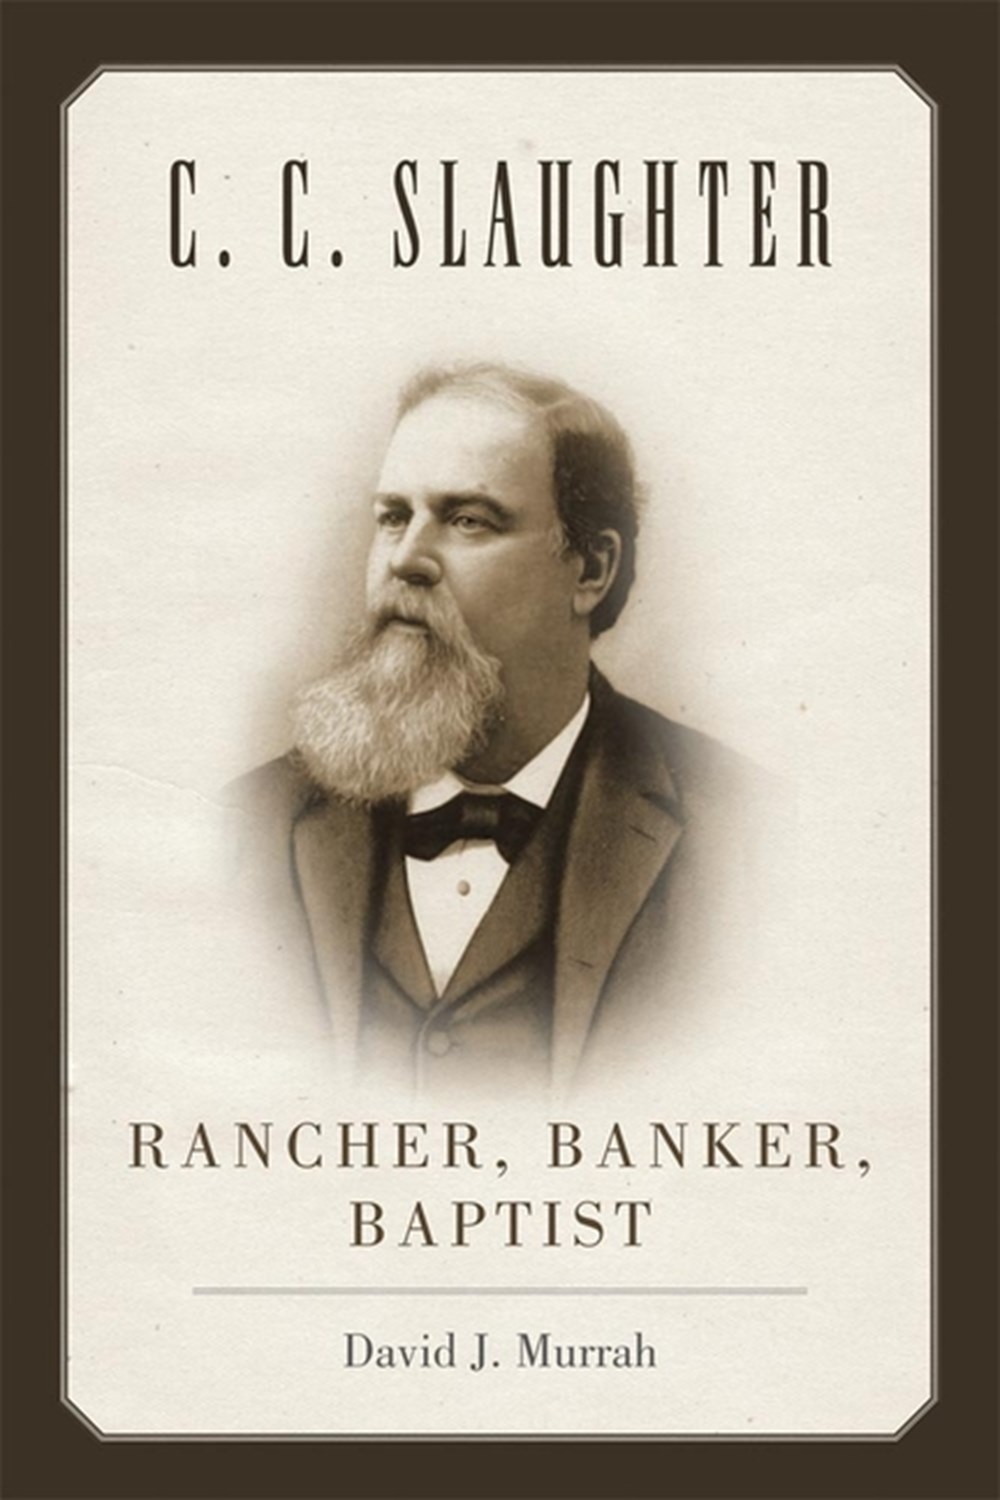 C.C. Slaughter Rancher, Banker, Baptist